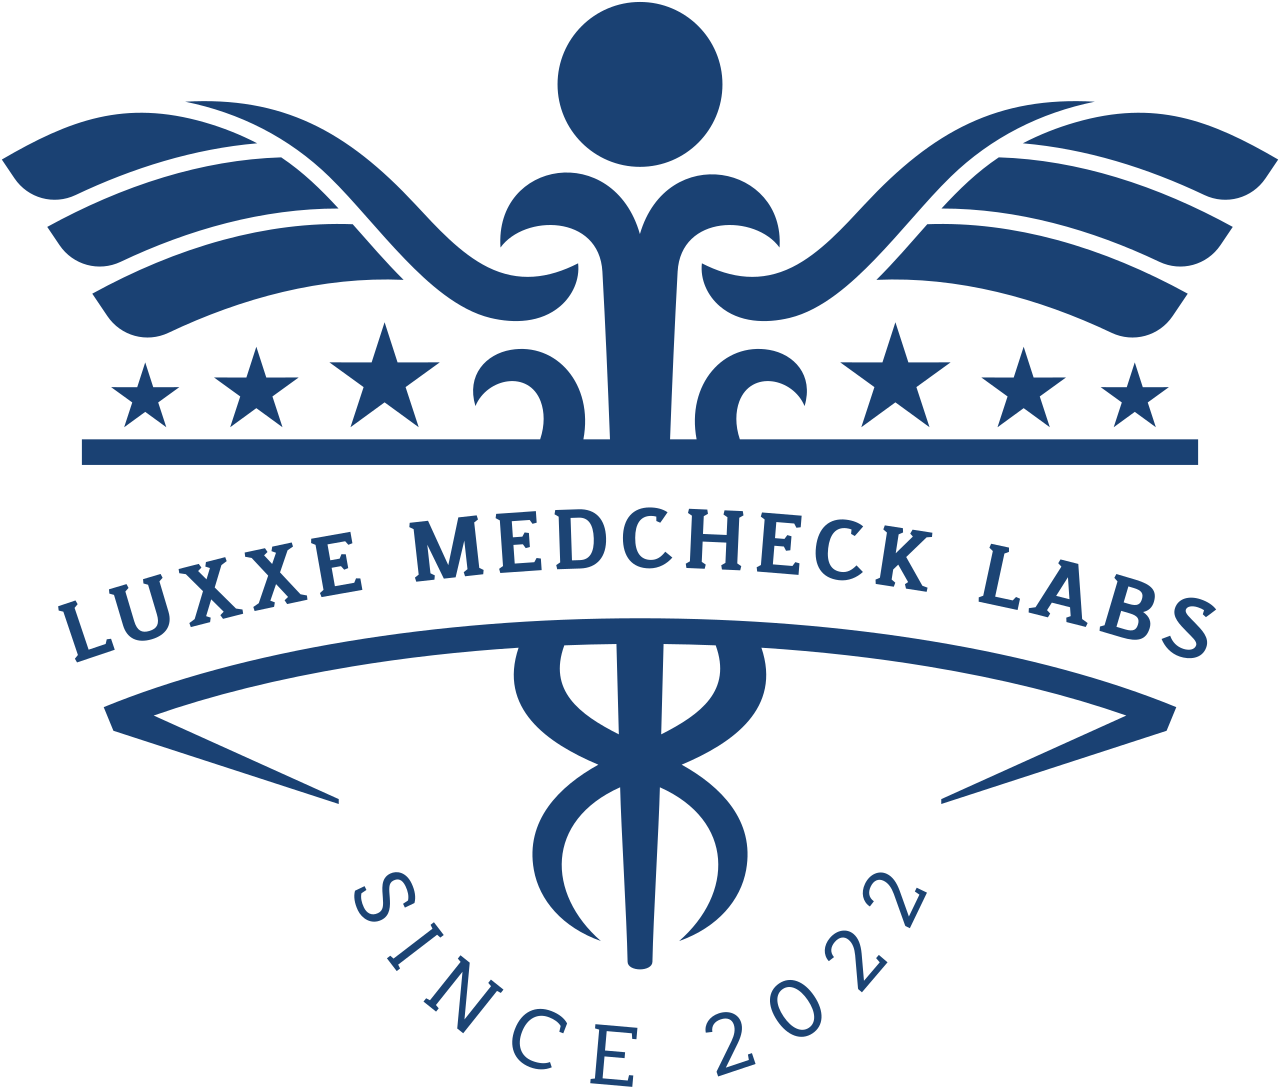 LUXXE MEDCHECK LABS's logo